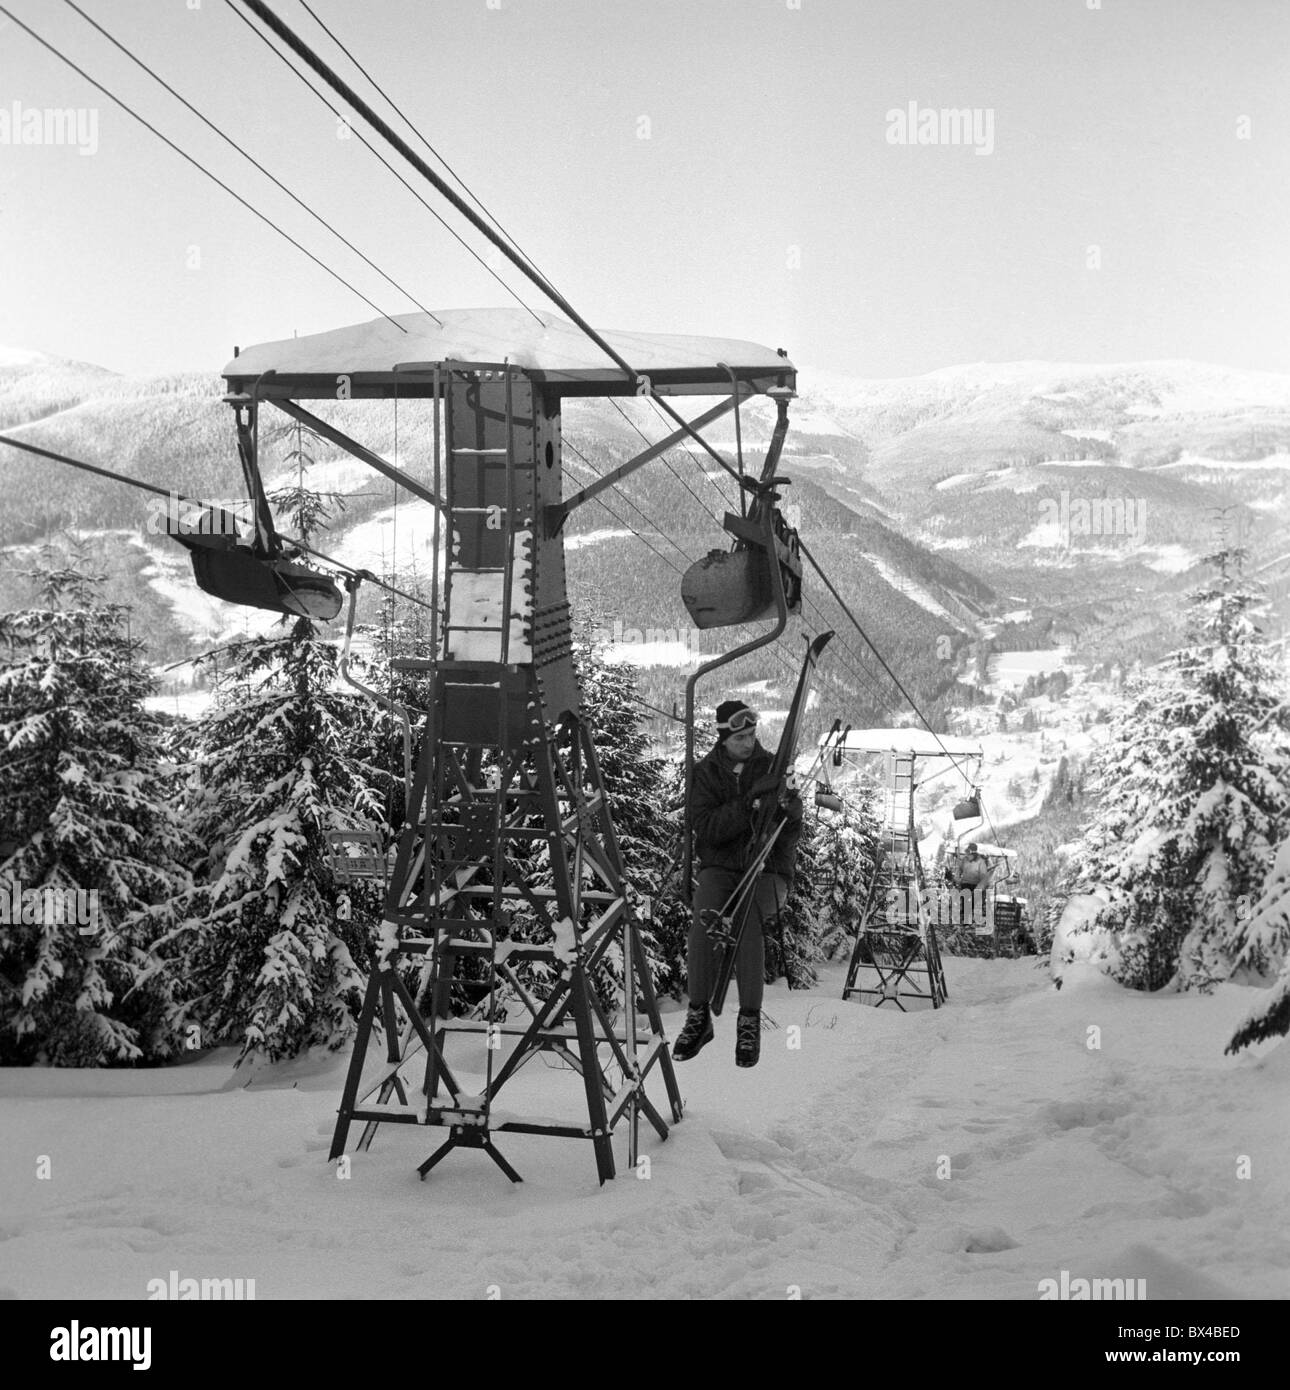 Riesengebirge, winter, skiing, ski lift Stock Photo